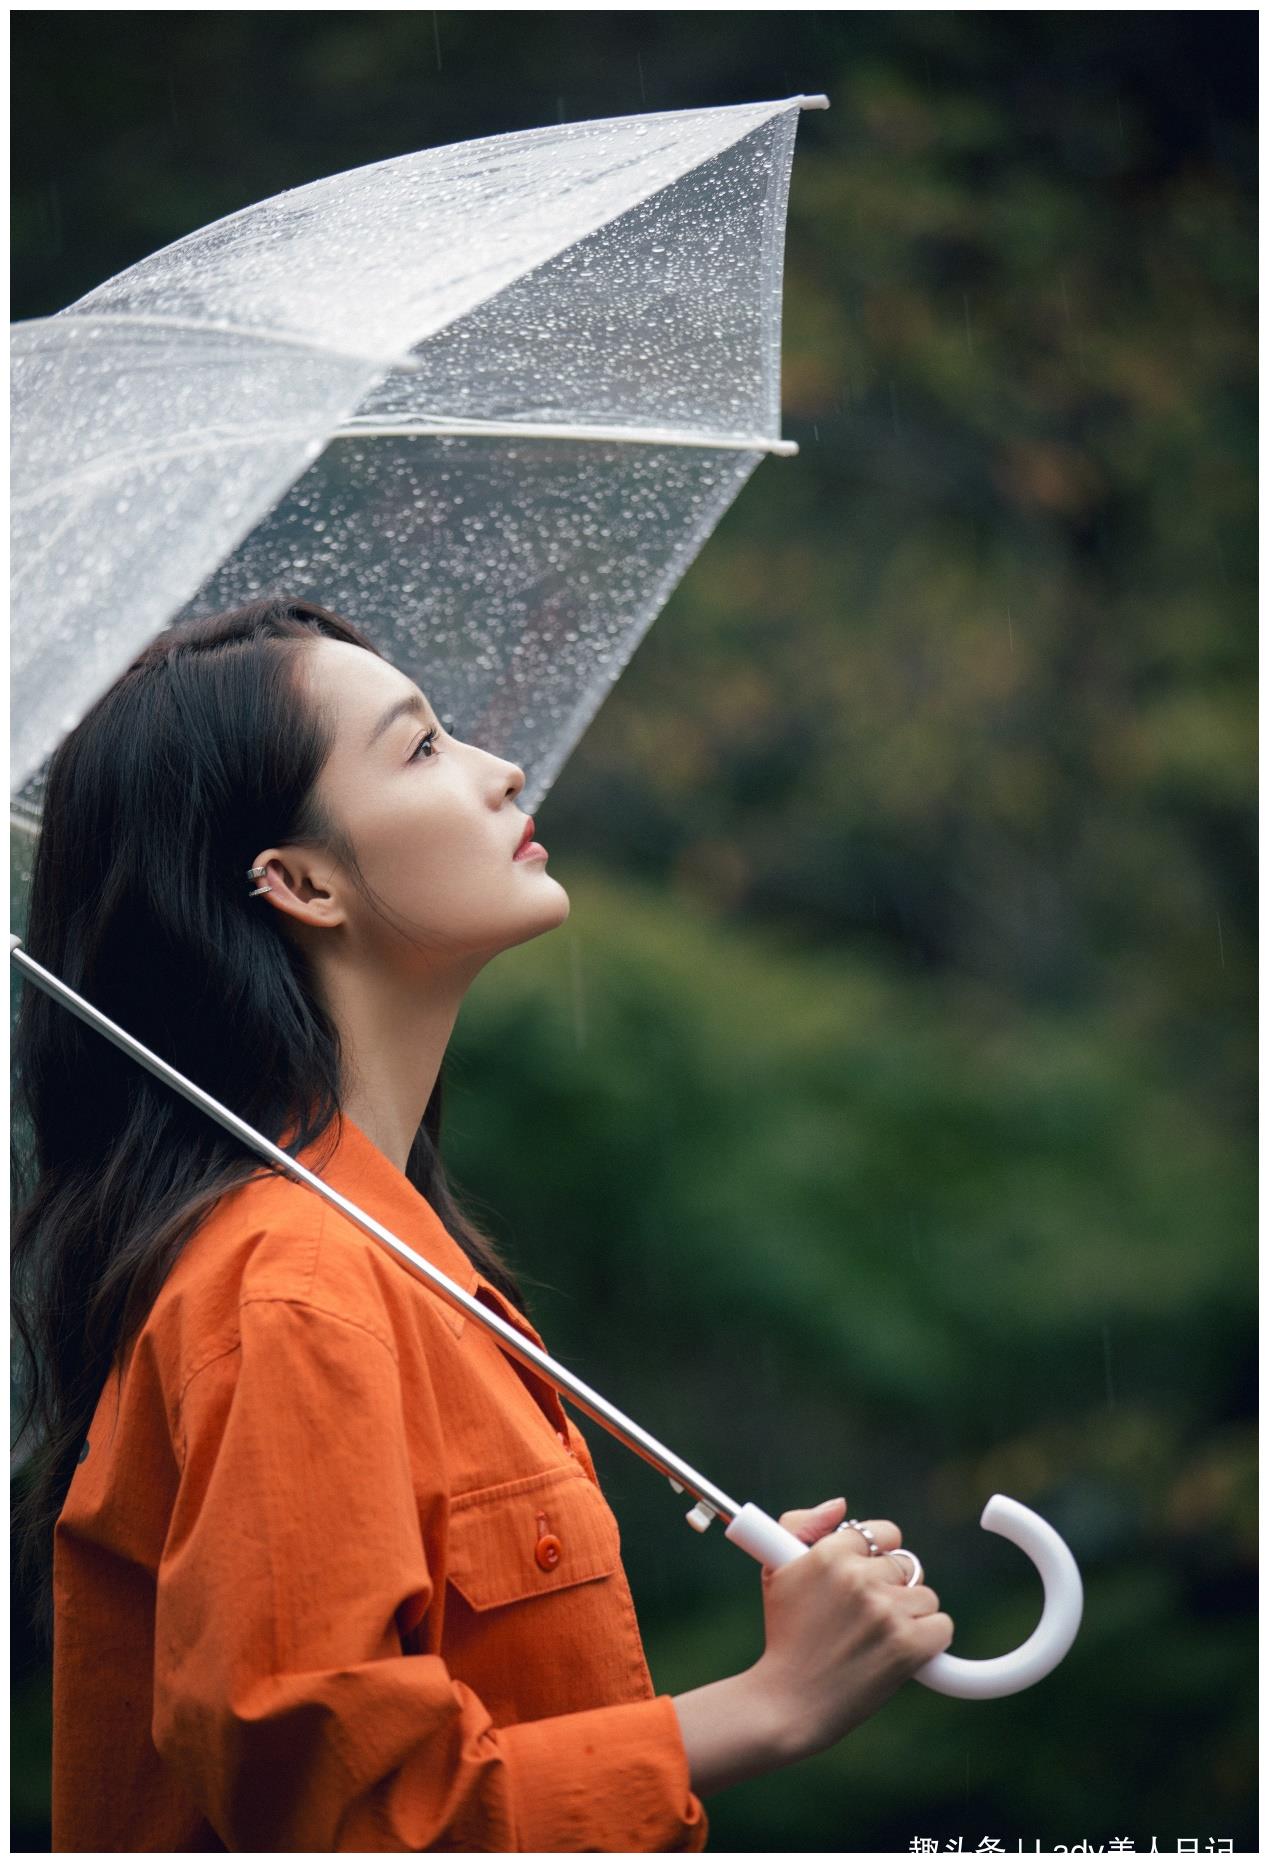 李沁天生适合做个安静美女子,穿现代装撑伞站雨里,都有种古典美